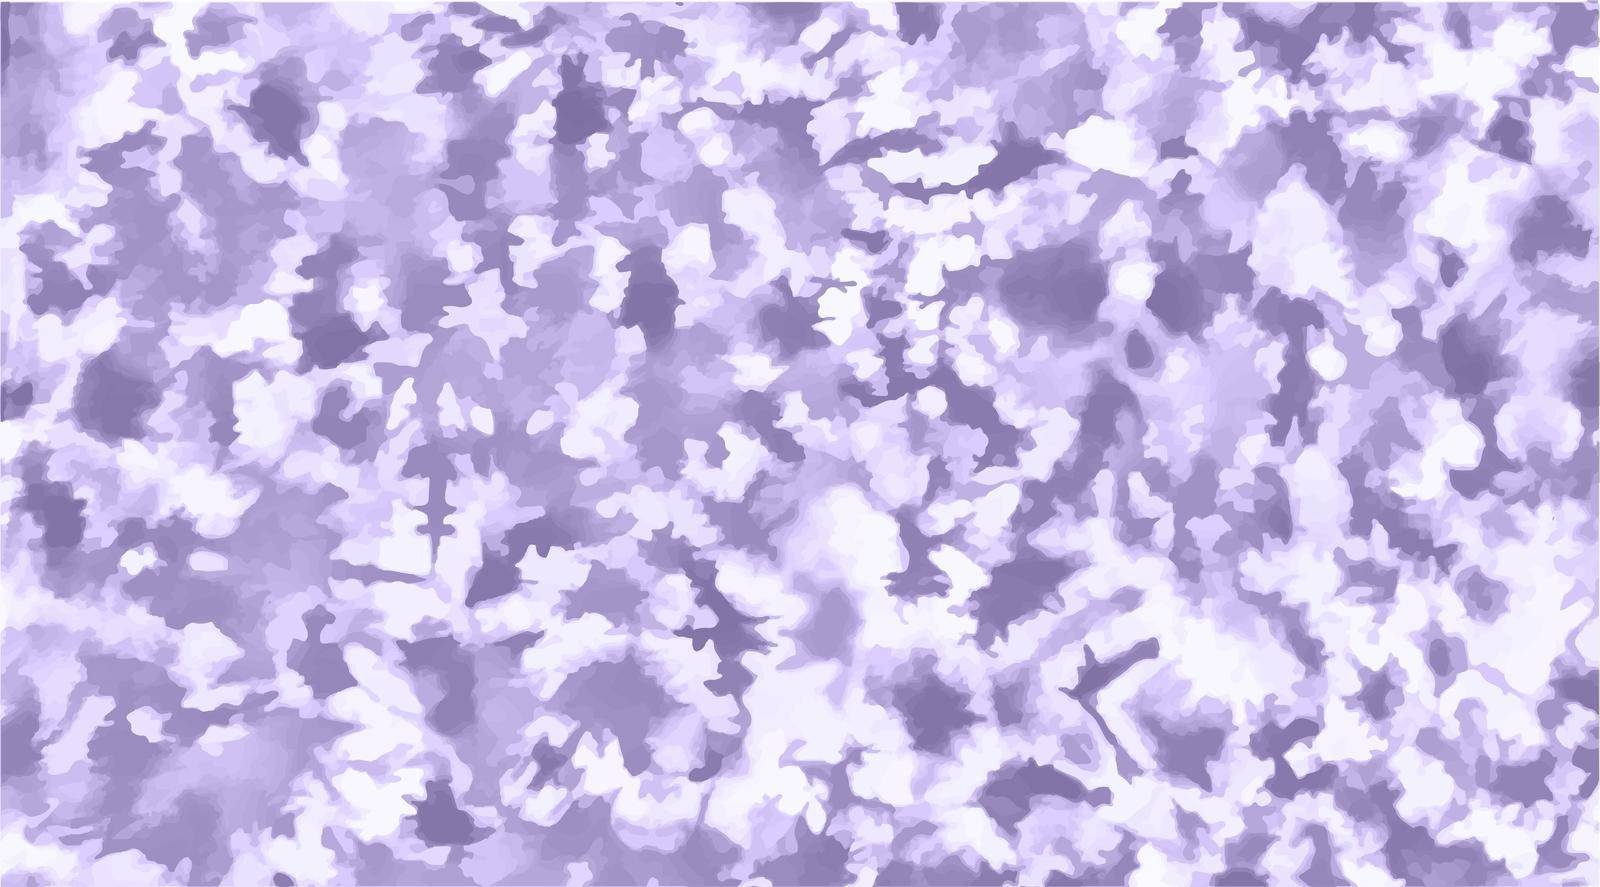 Tie dye background Geometric pattern texture by JulsIst